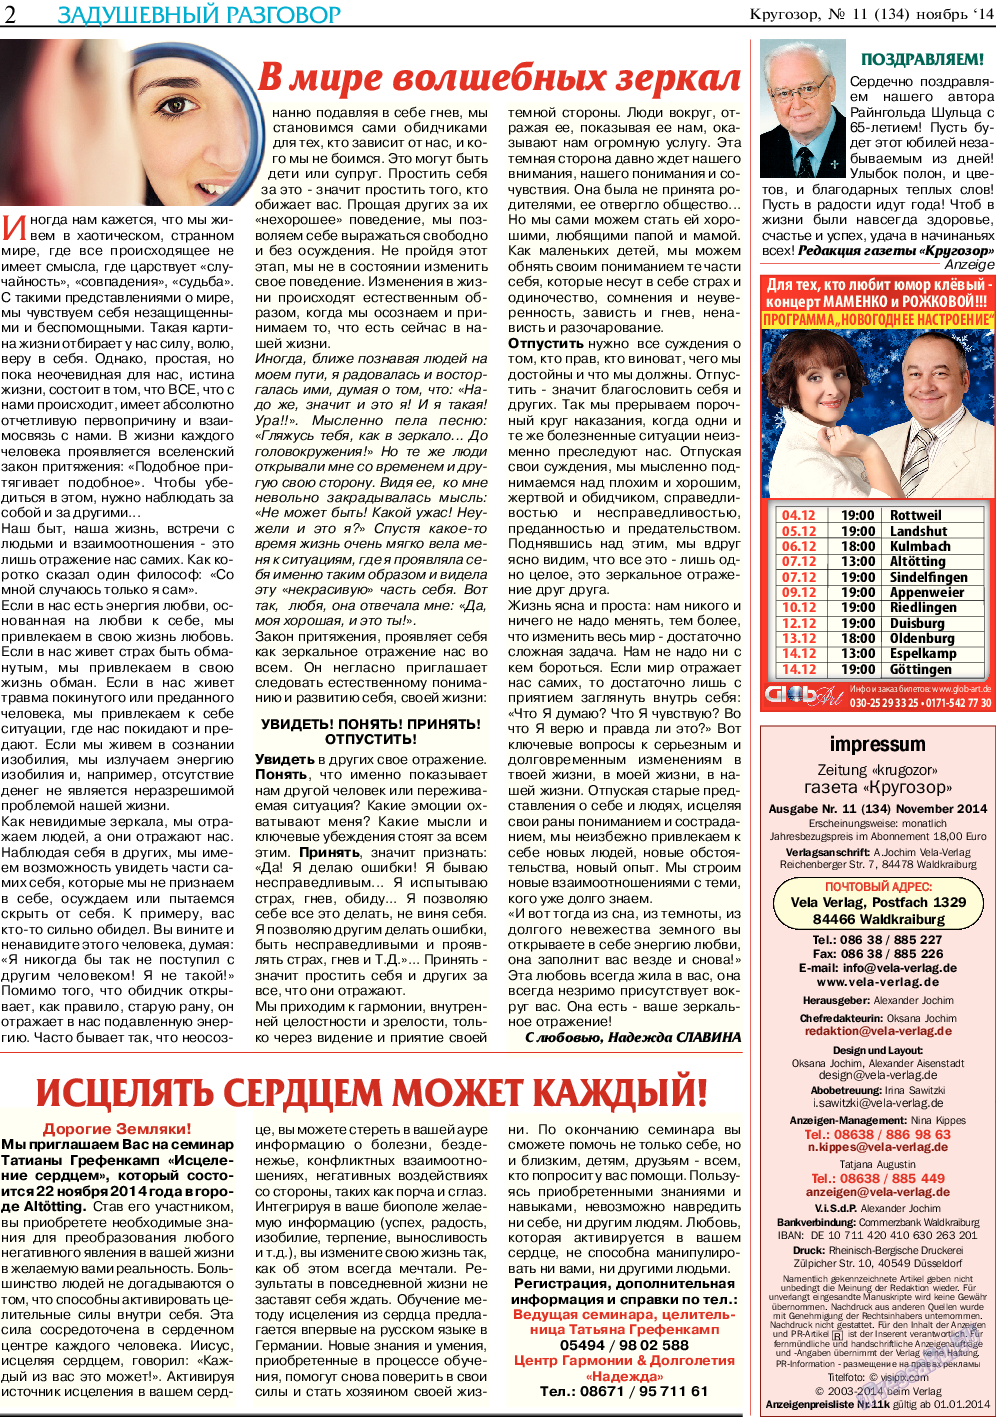 Кругозор (газета). 2014 год, номер 11, стр. 2